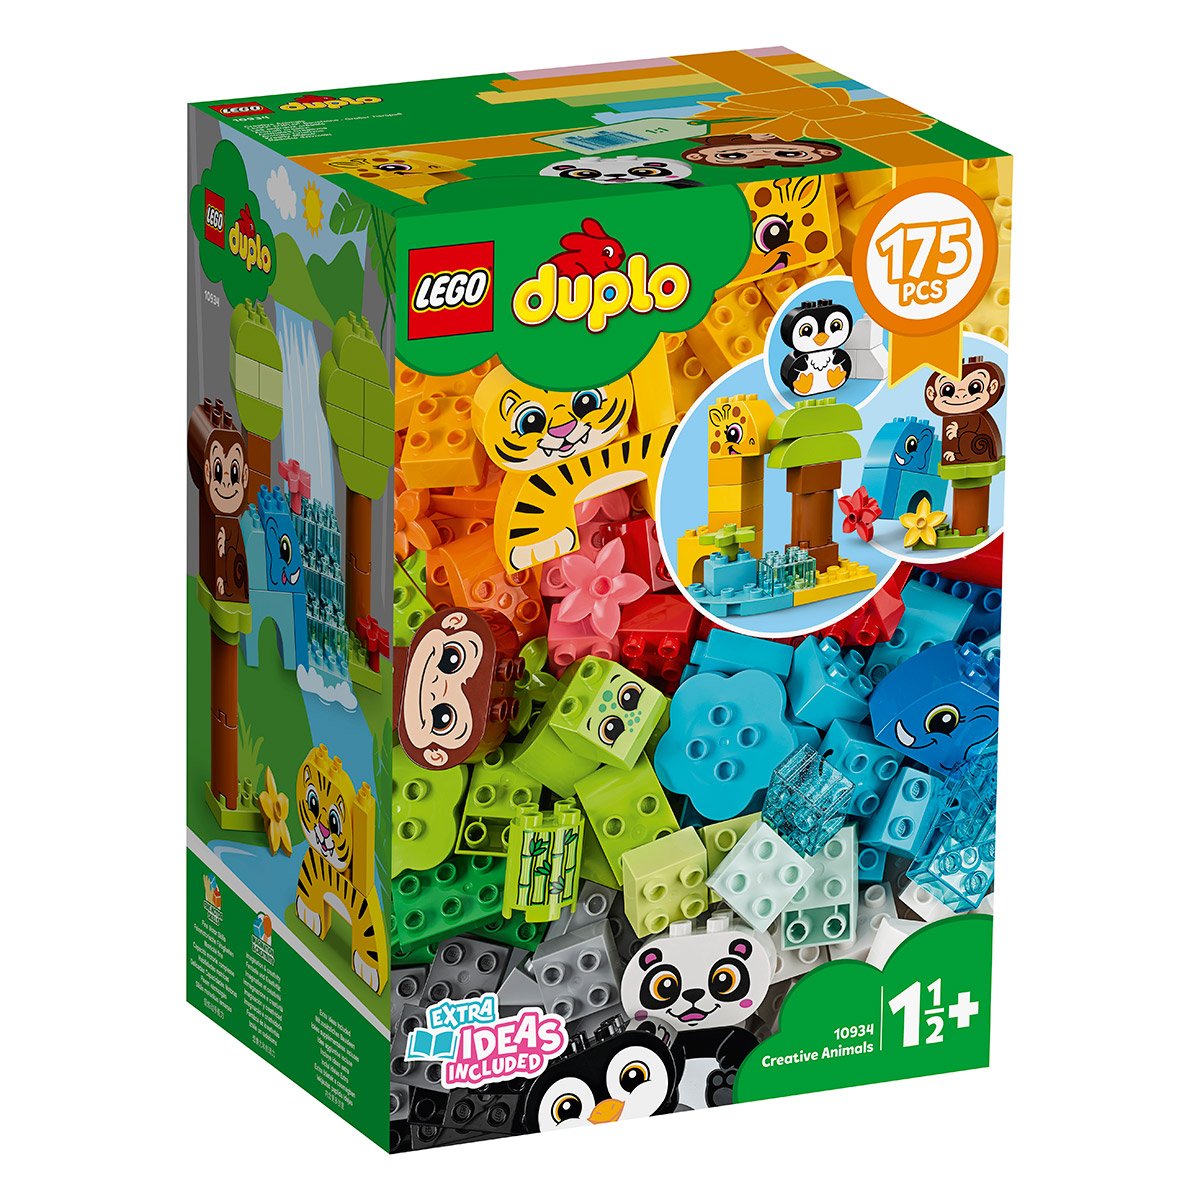 Les animaux créatifs LEGO DUPLO 10934